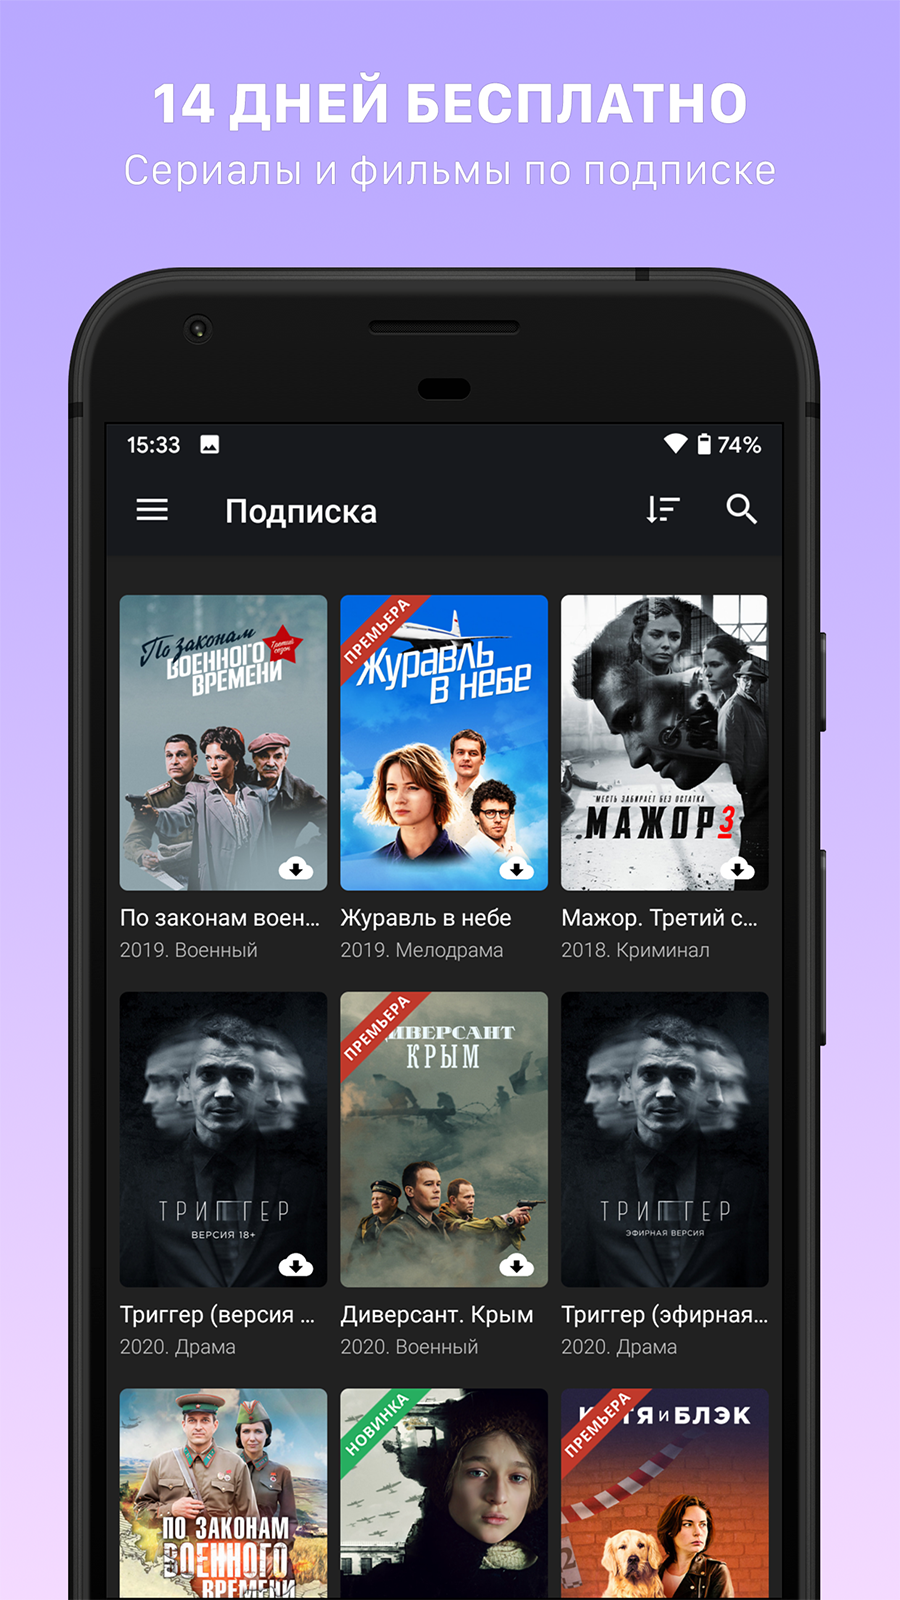 Android application Кино1ТВ: сериалы и фильмы HD screenshort